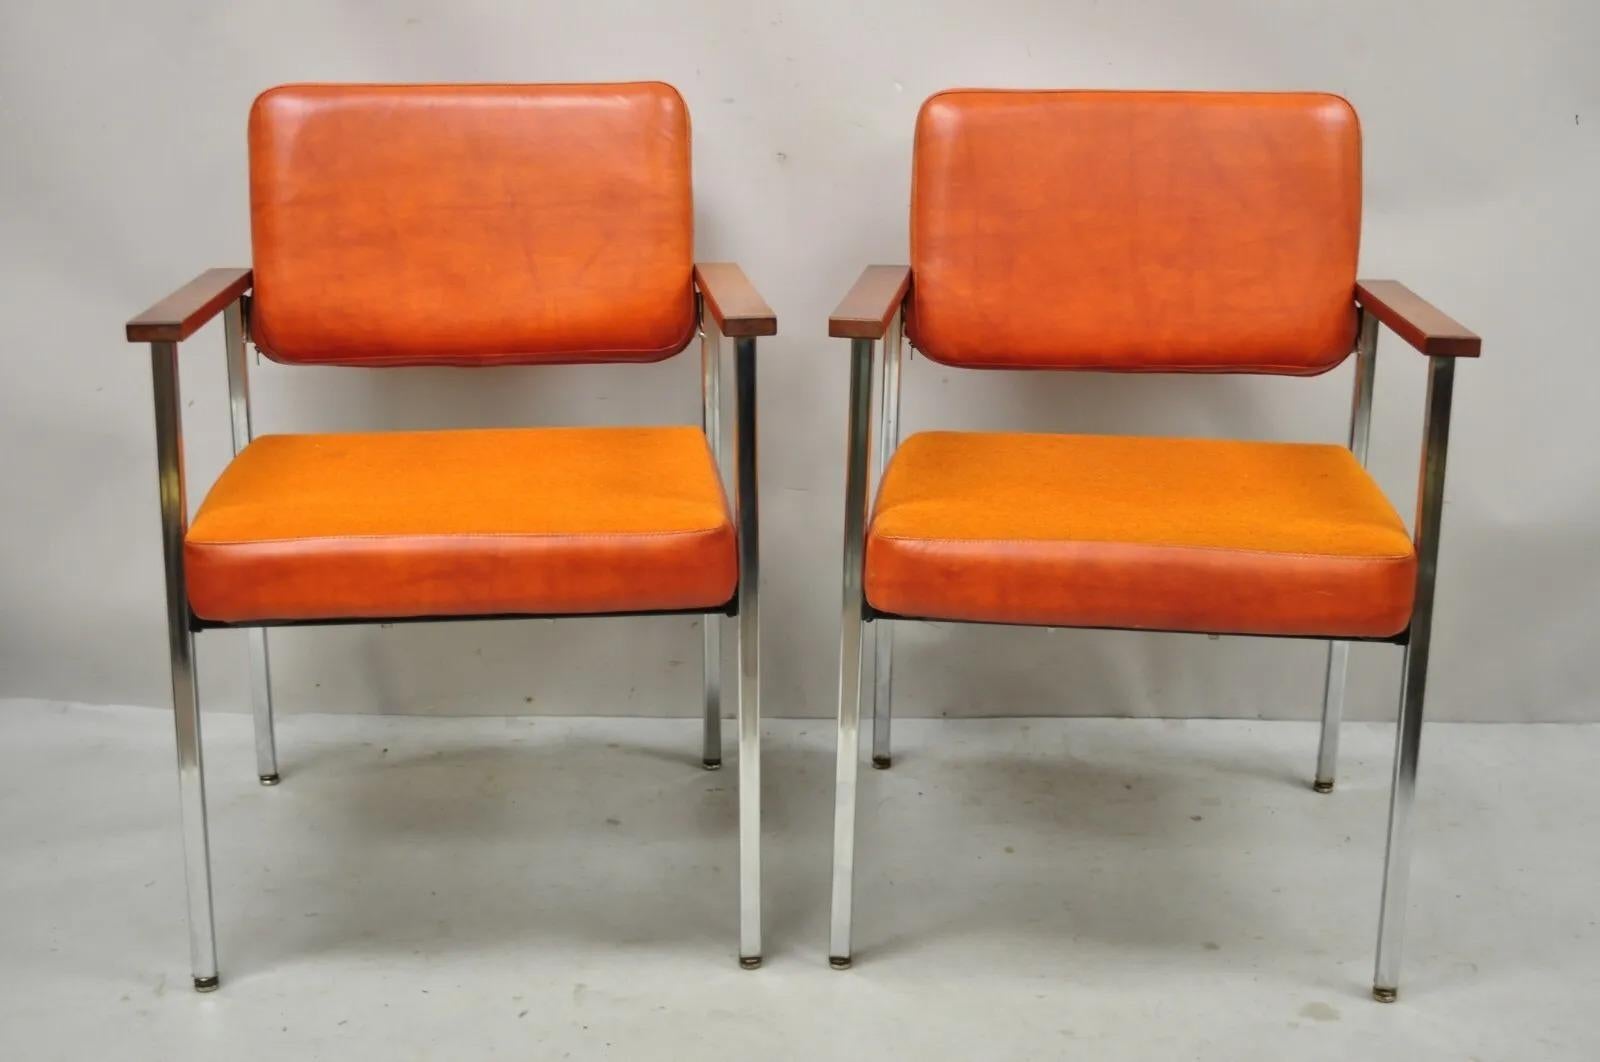 Mid Century Modern orangefarbene Naugahyde Lounge-Sessel mit Chromgestell von Malibu Ind. Das Gestell ist aus verchromtem Metall, die Polsterung aus orangefarbenem Naugahyde und Stoff, die Armlehnen aus Massivholz. Ein sehr schönes Vintage-Paar mit